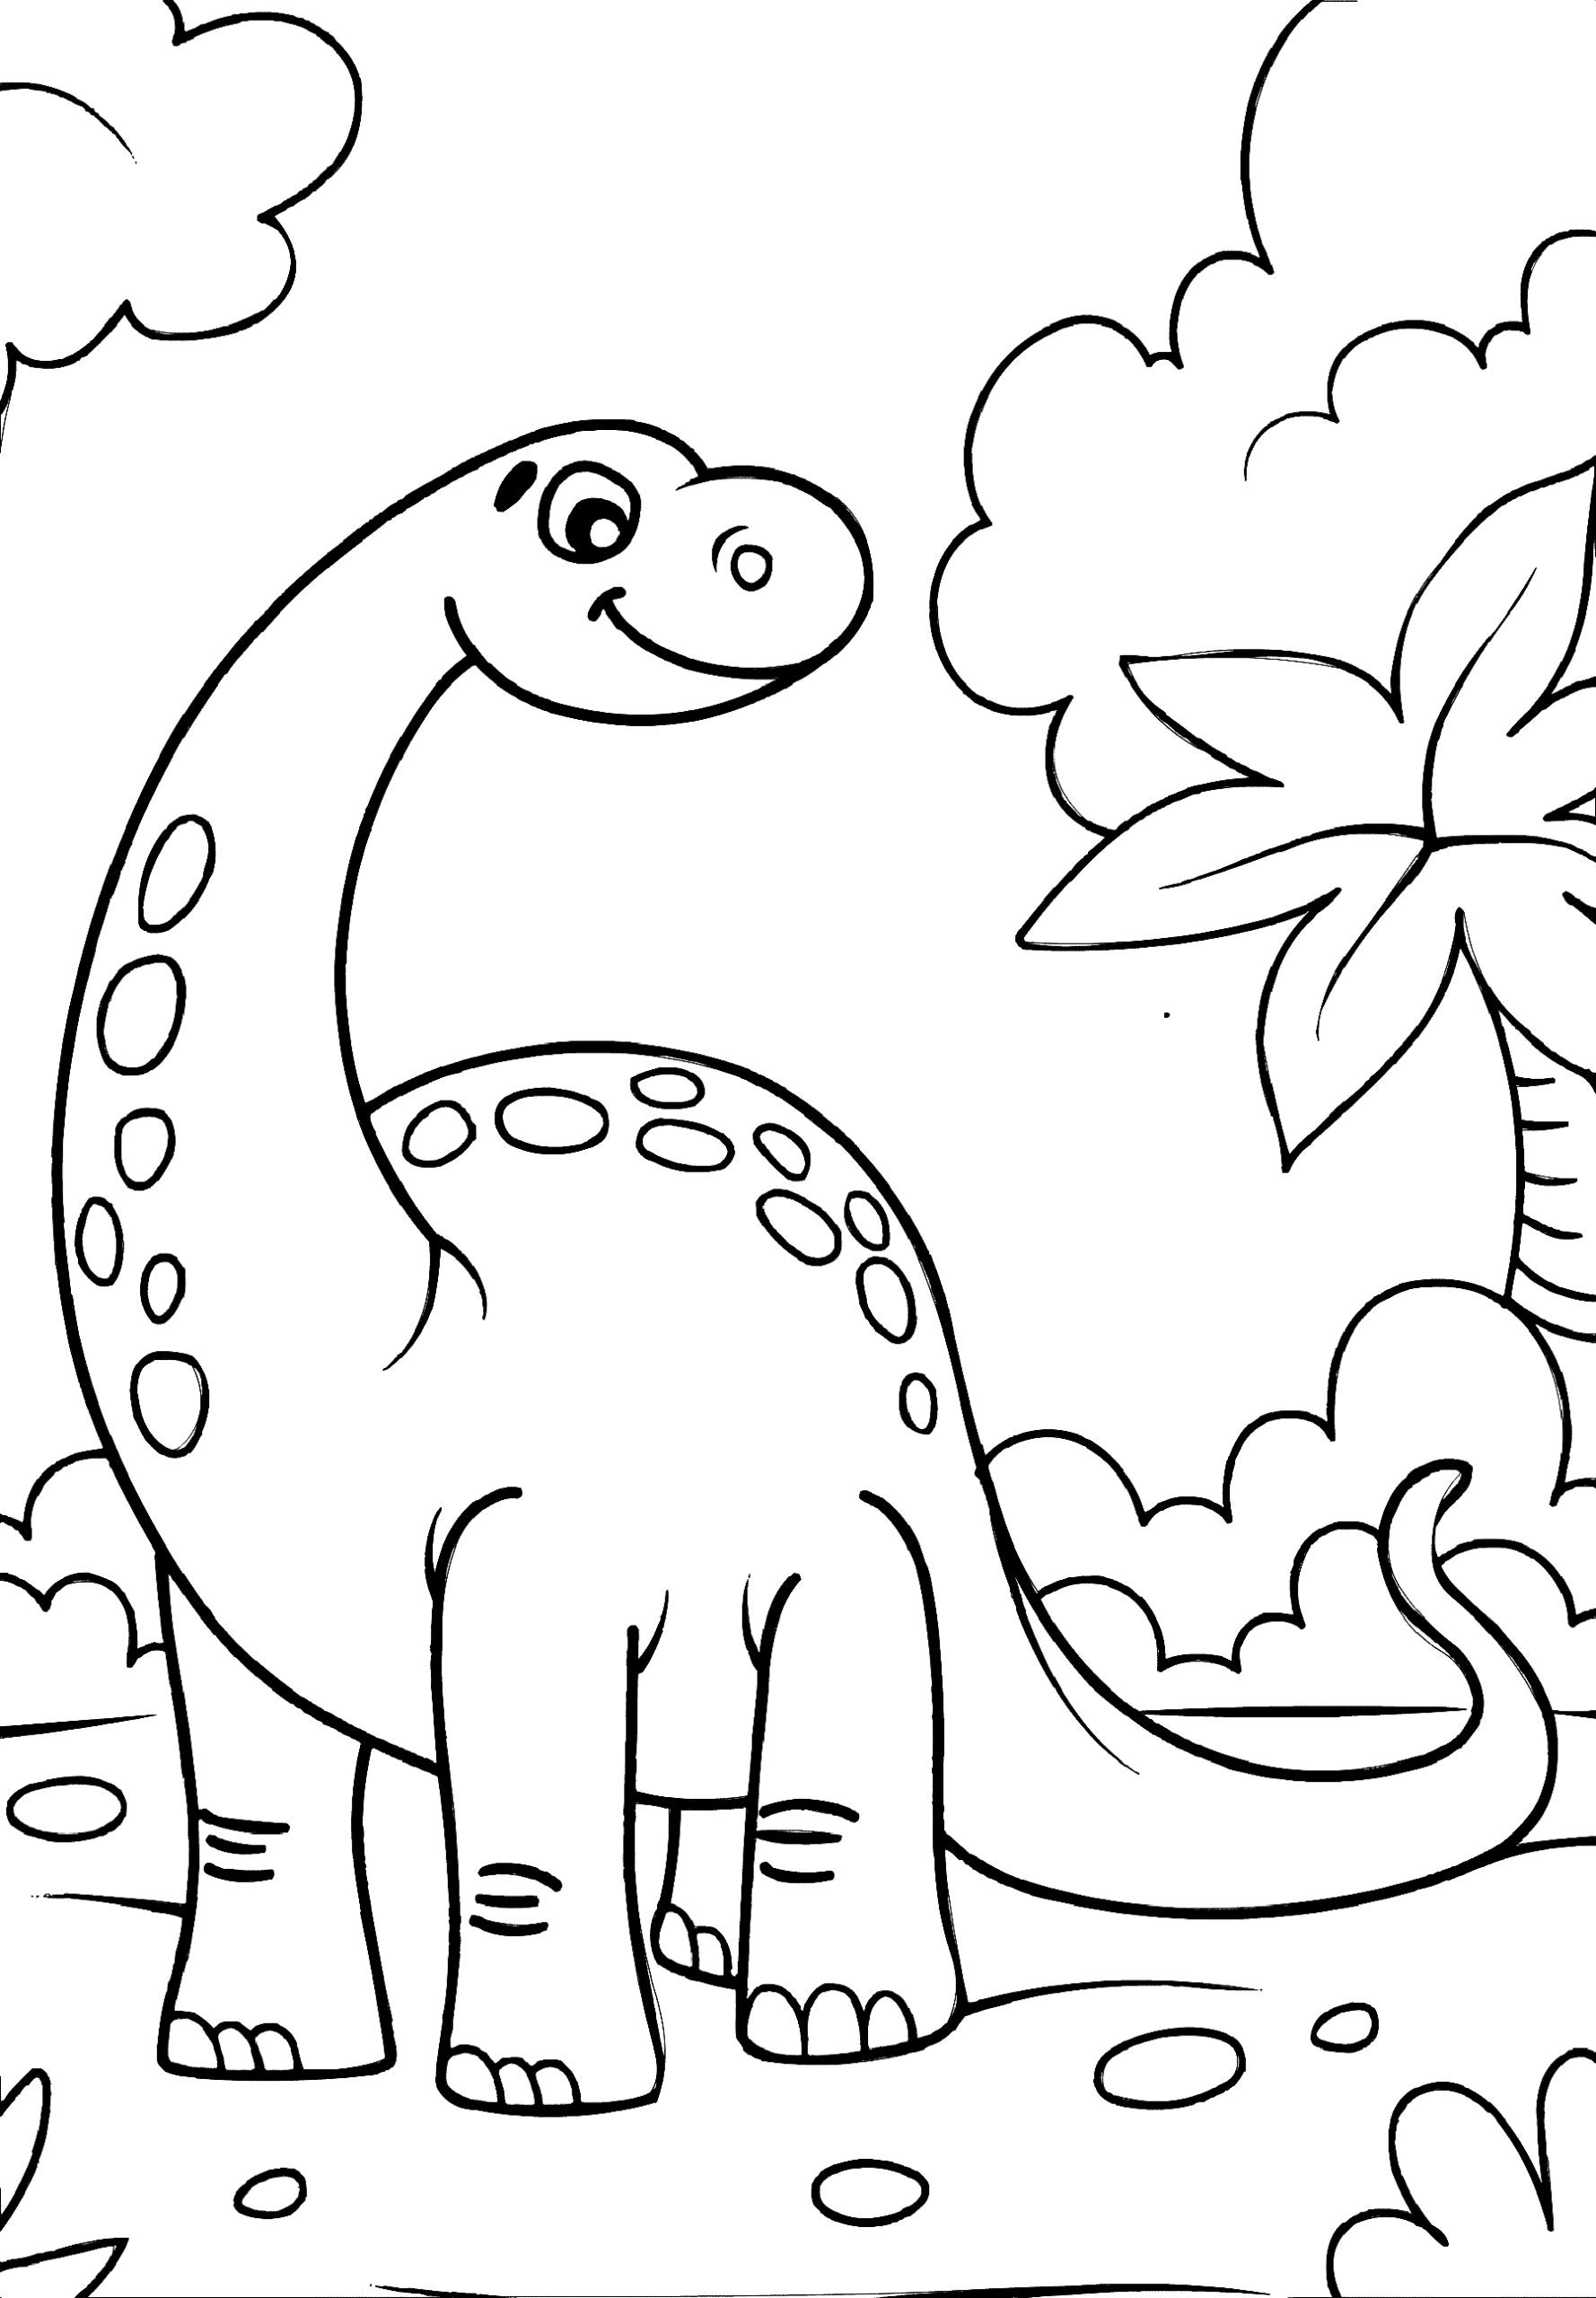 Printable PRINTABLE Dinosaur Coloring Page for kids.